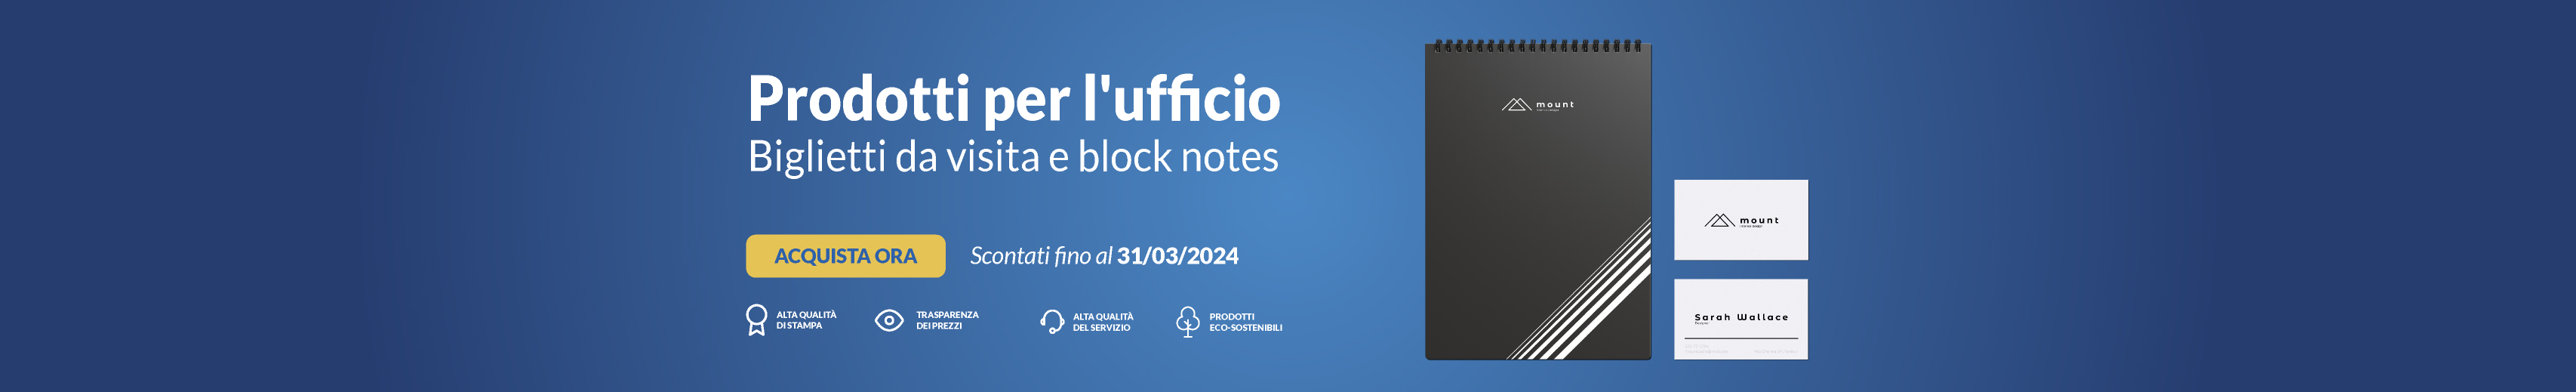 Homepage B - Biglietti da visita e block notes UFFICIO